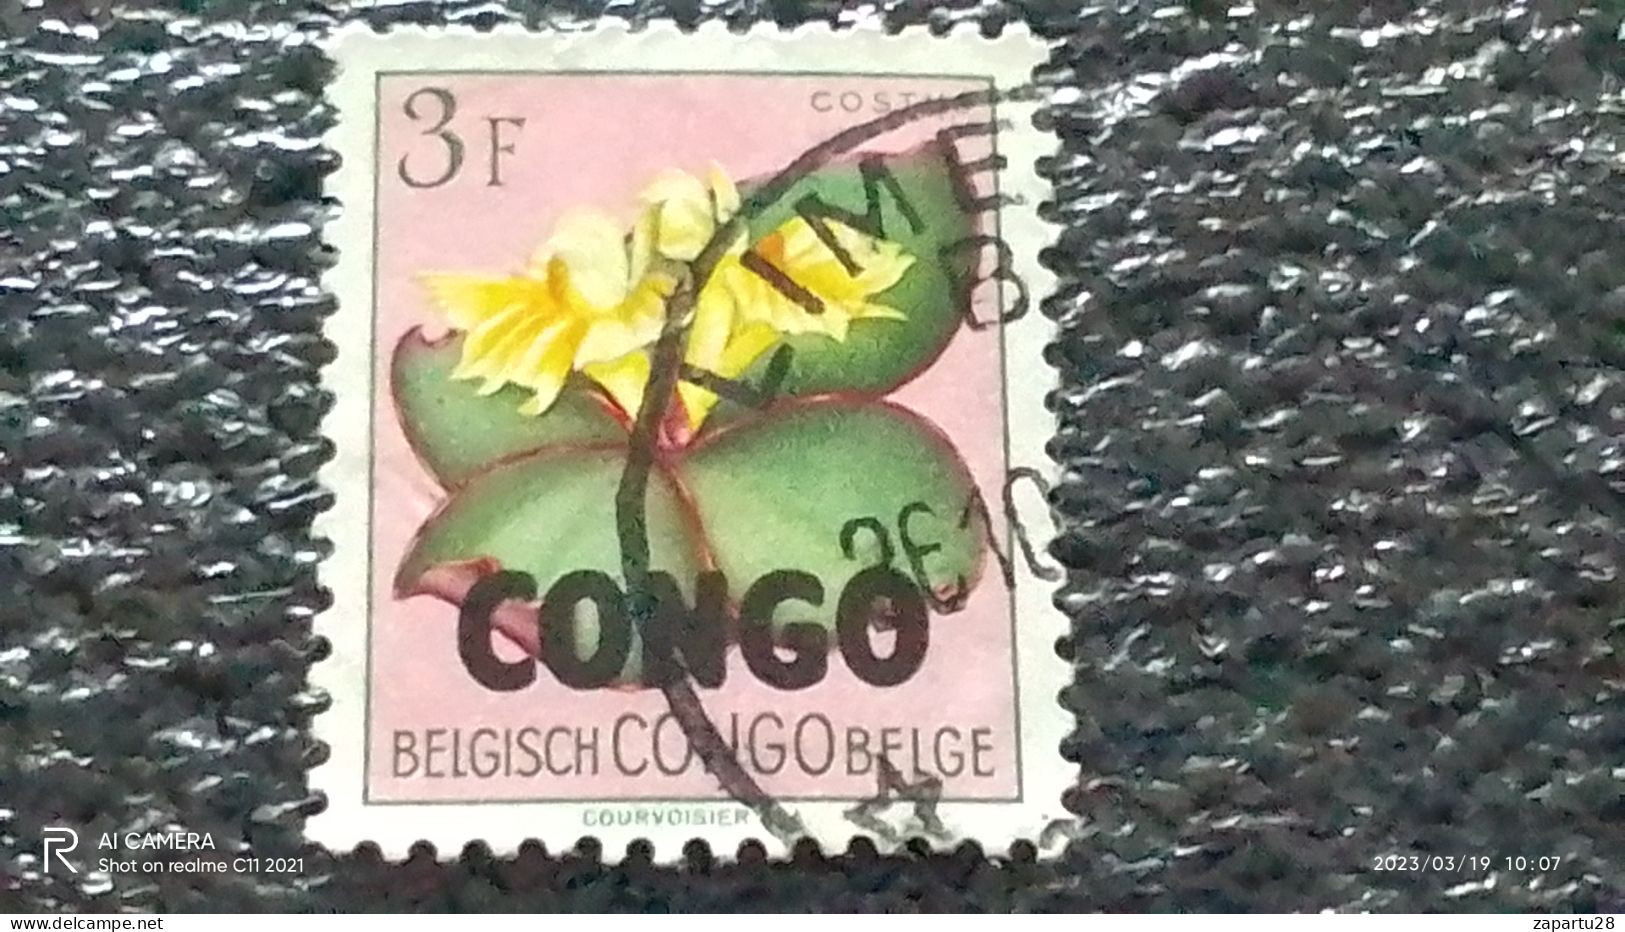 KONGO HALK CUMHURİYETİ-1960-70-      3FR     USED - Used Stamps